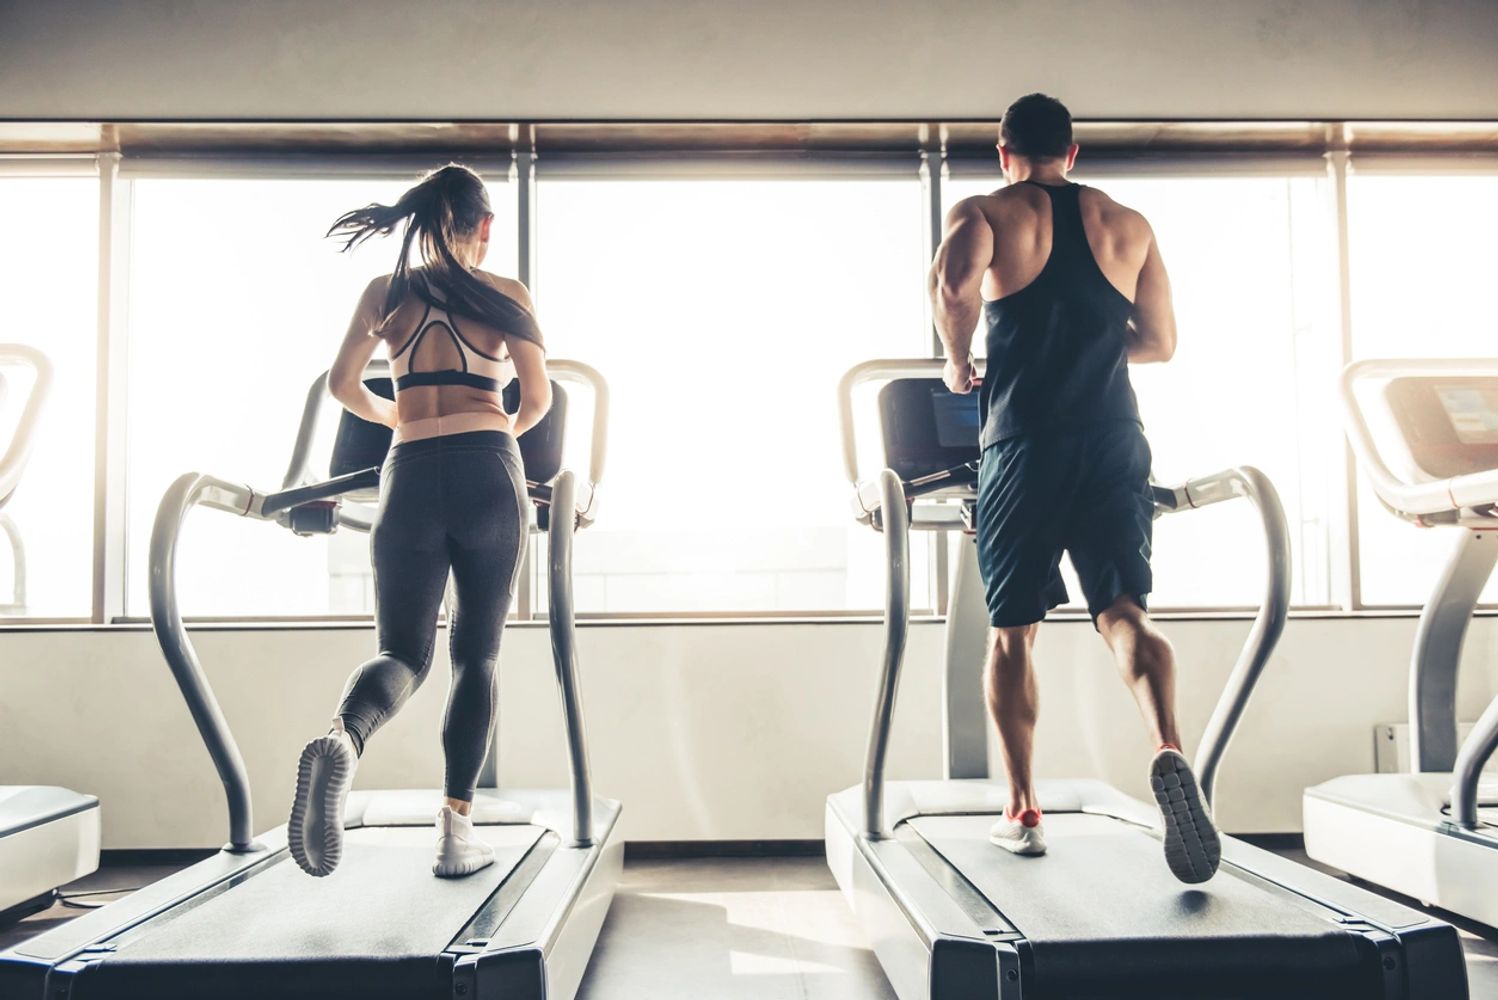 Two people on treadmills